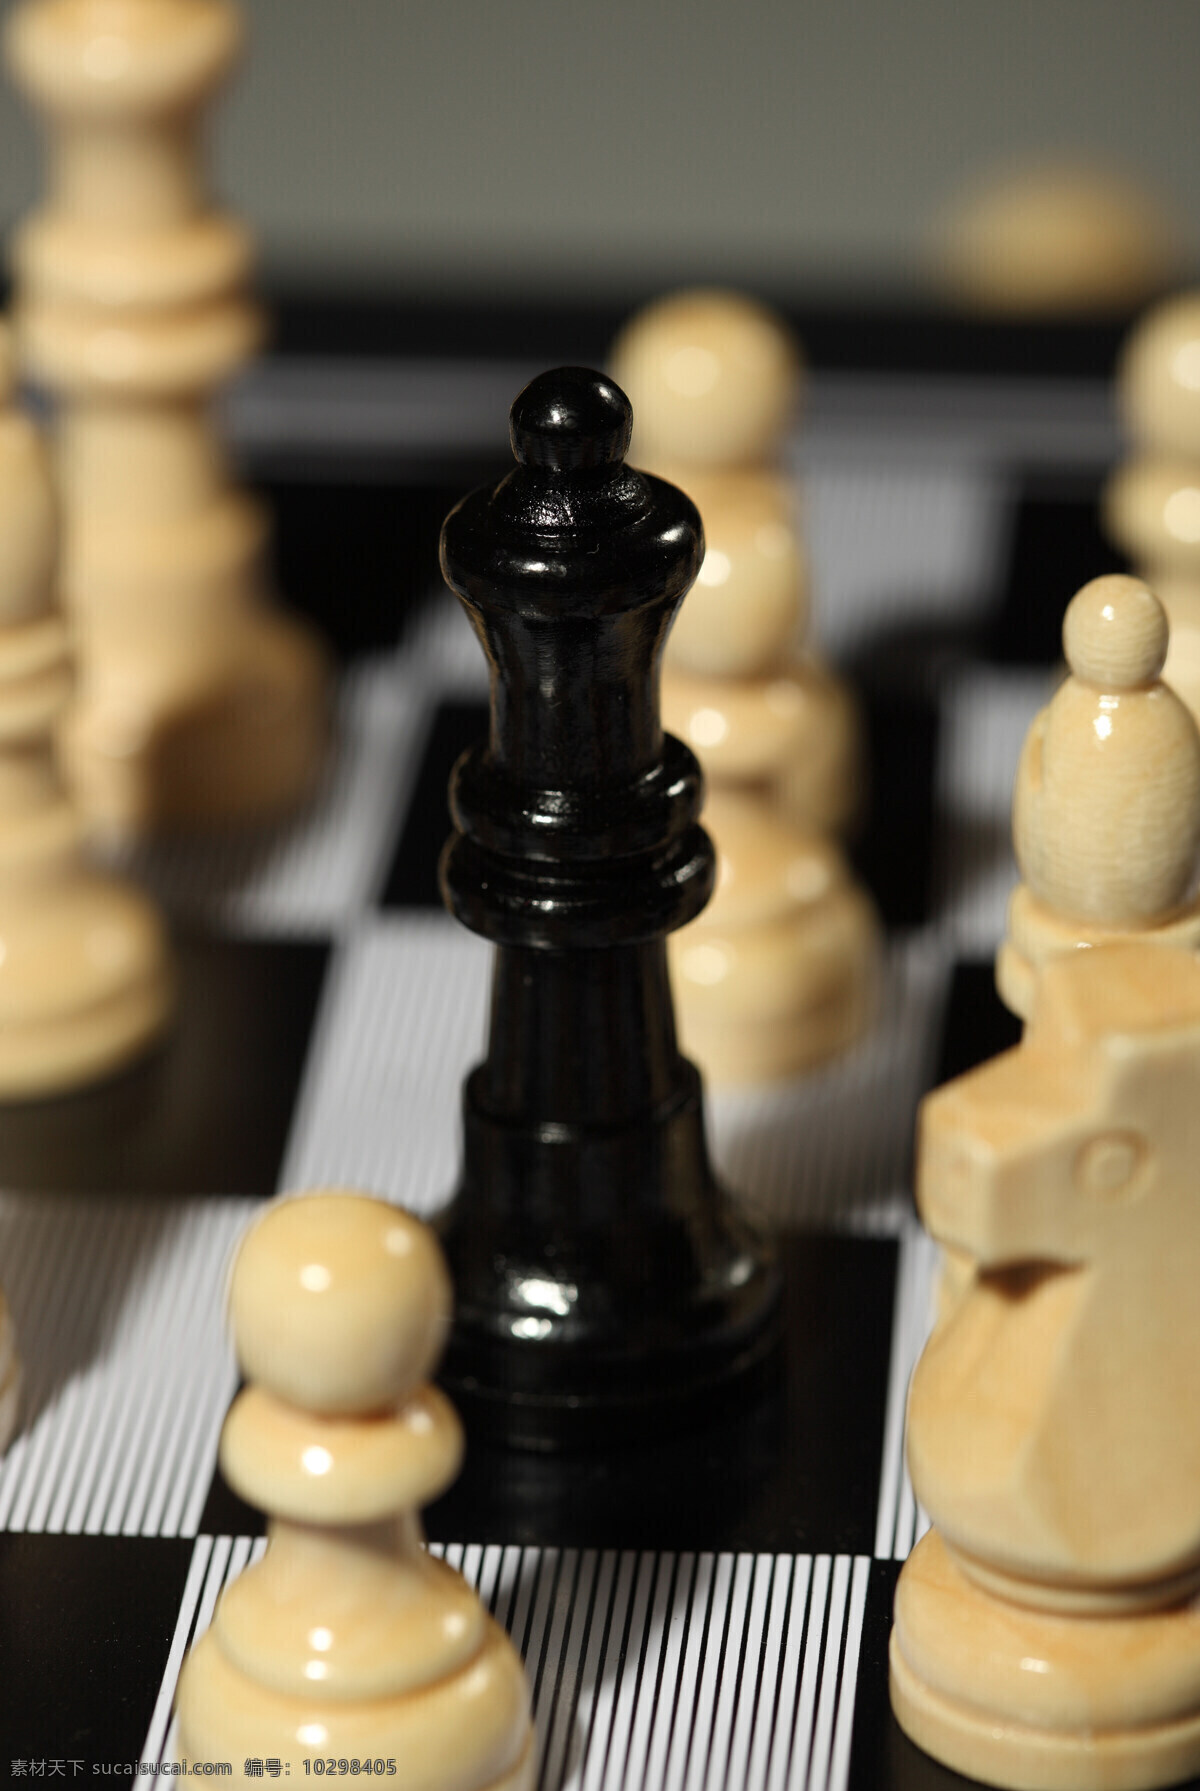 国际象棋图片 国际象棋 对立 团队 颜色 娱乐休闲 生活百科